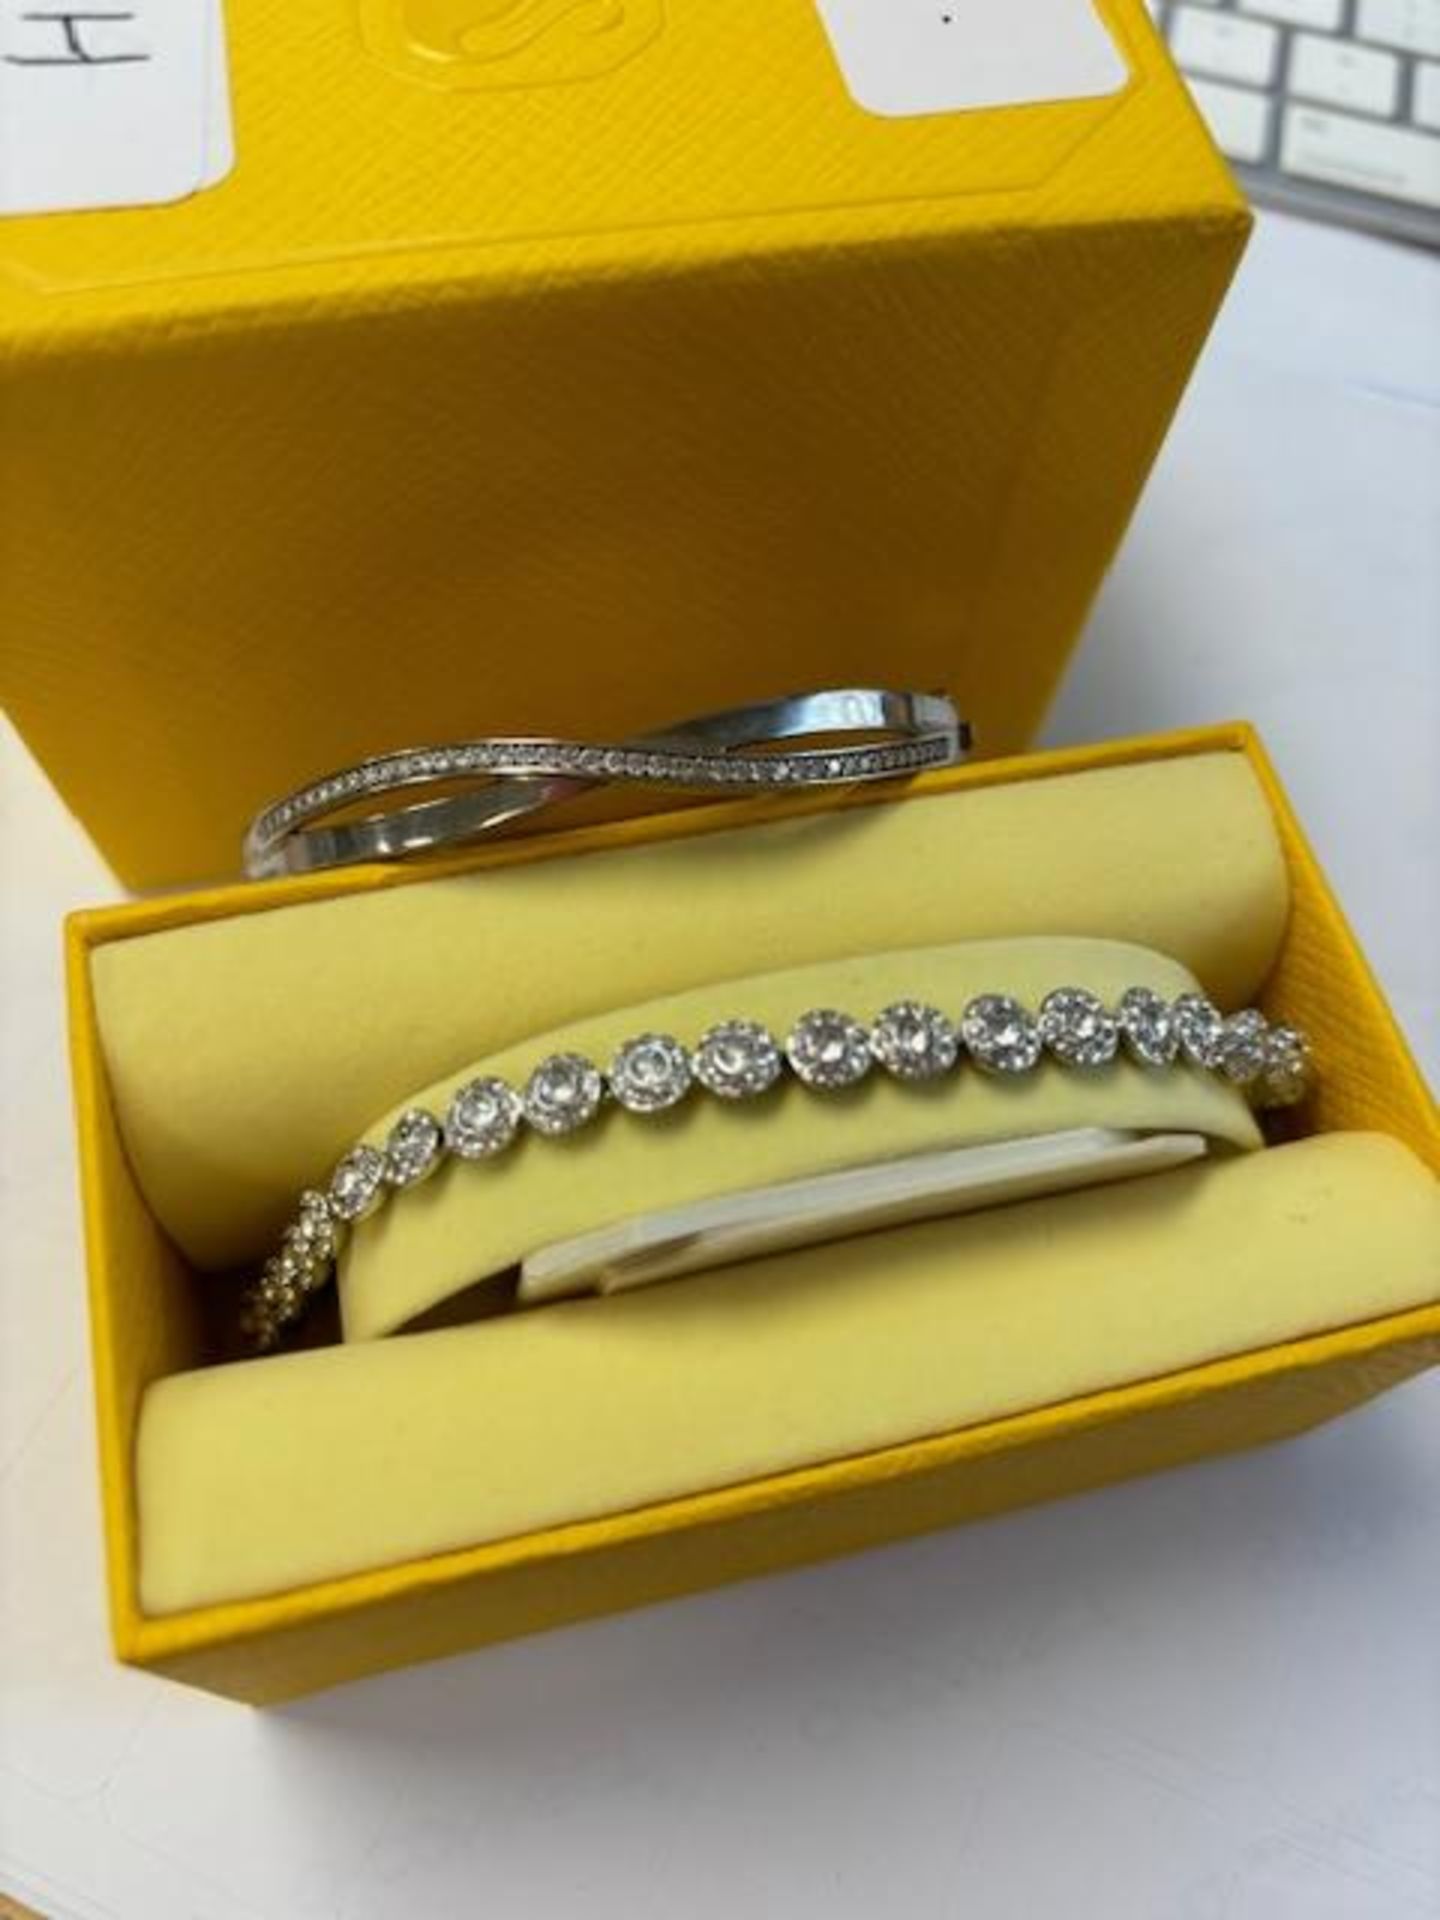 RRP £160 Swarovski Twist Love Bracelet & Swarovski Crystal Bracelet - Image 2 of 2